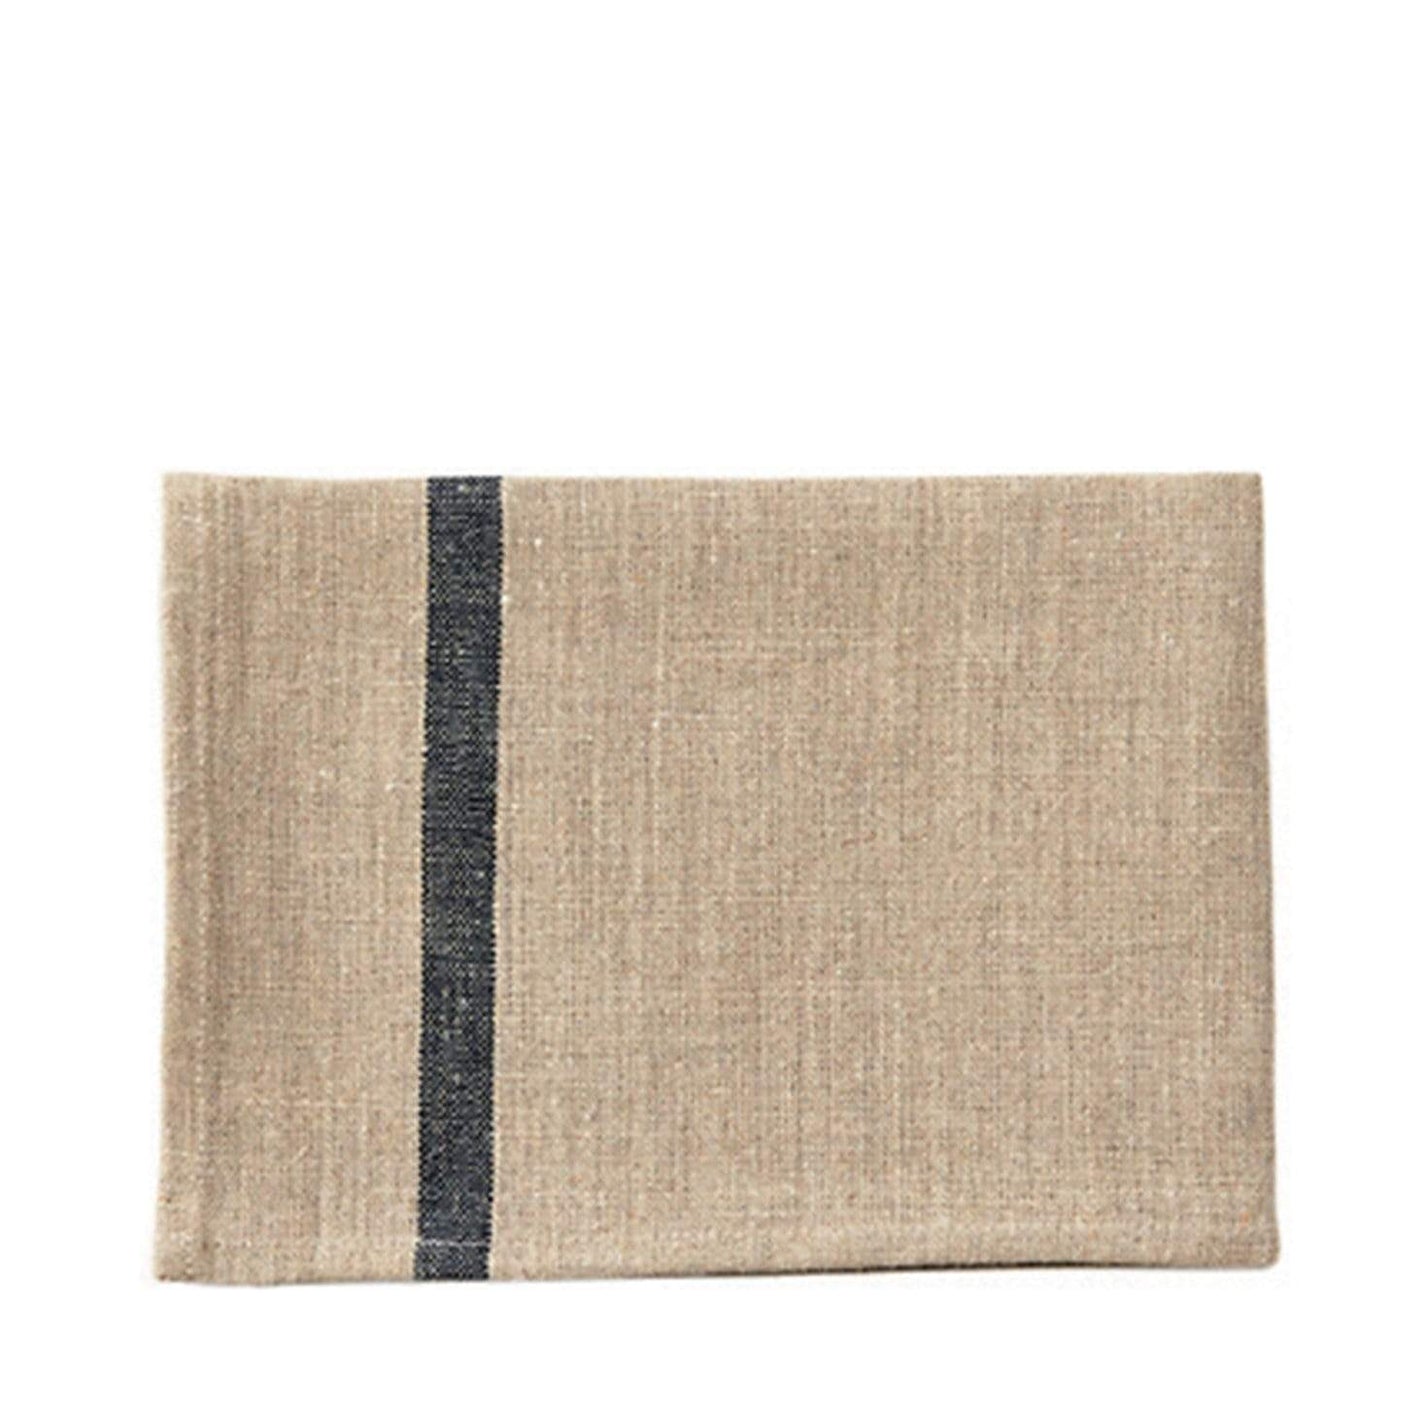 Fog Linen Work Tea Towel - Ecru with Navy Stripe